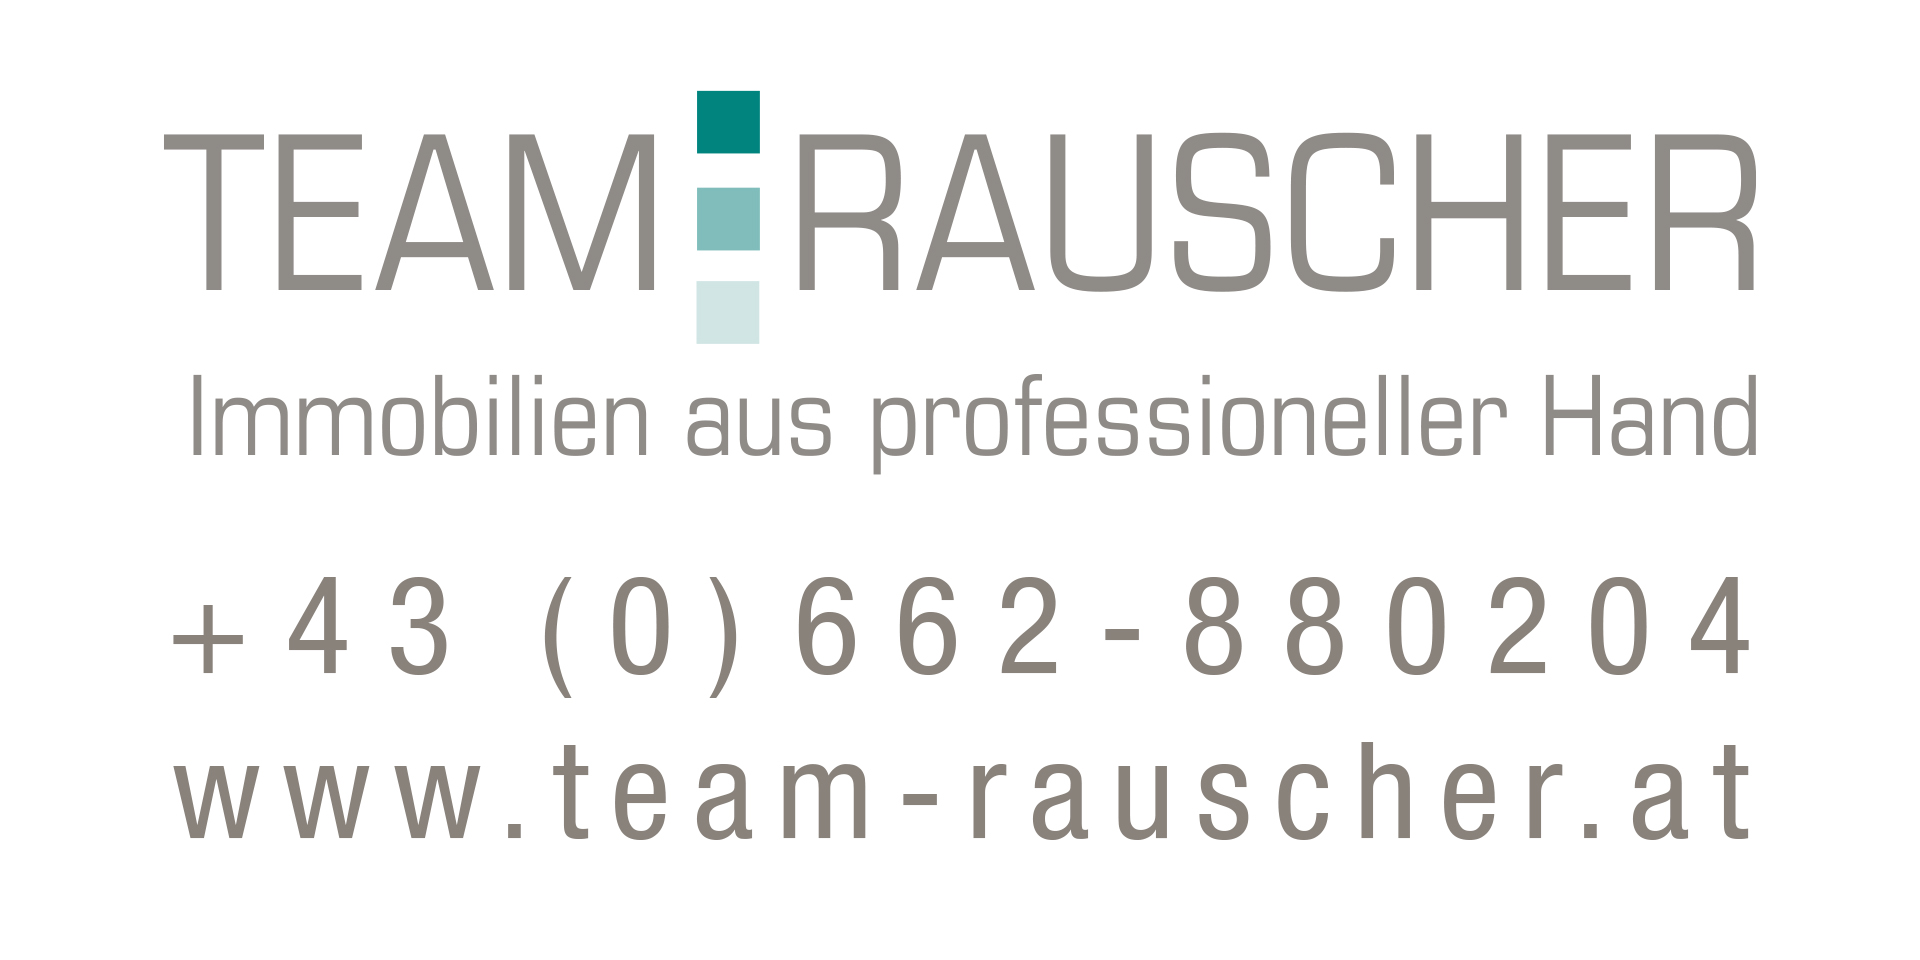 Team Rauscher